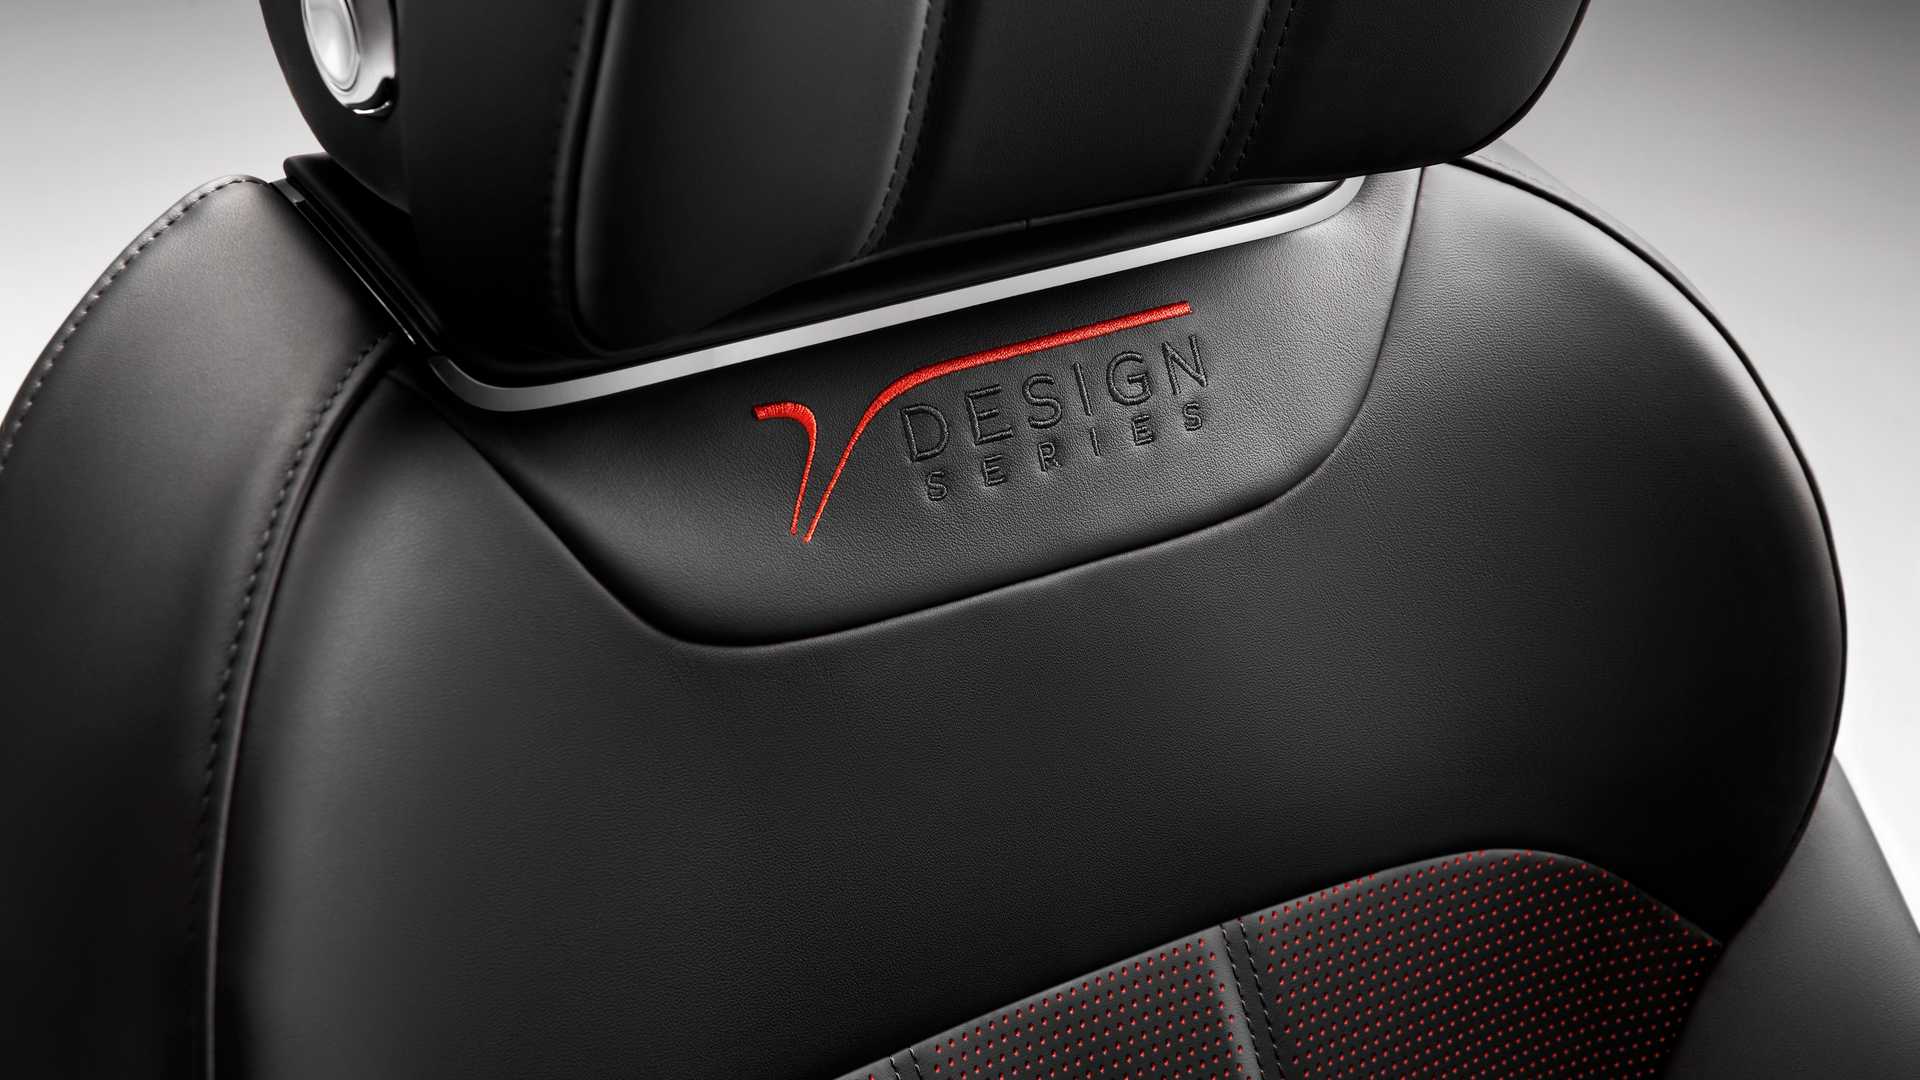 Bentley Bentayga V8 "Design Series" 2019 agrega nuevo sabor estético por dentro y por fuera